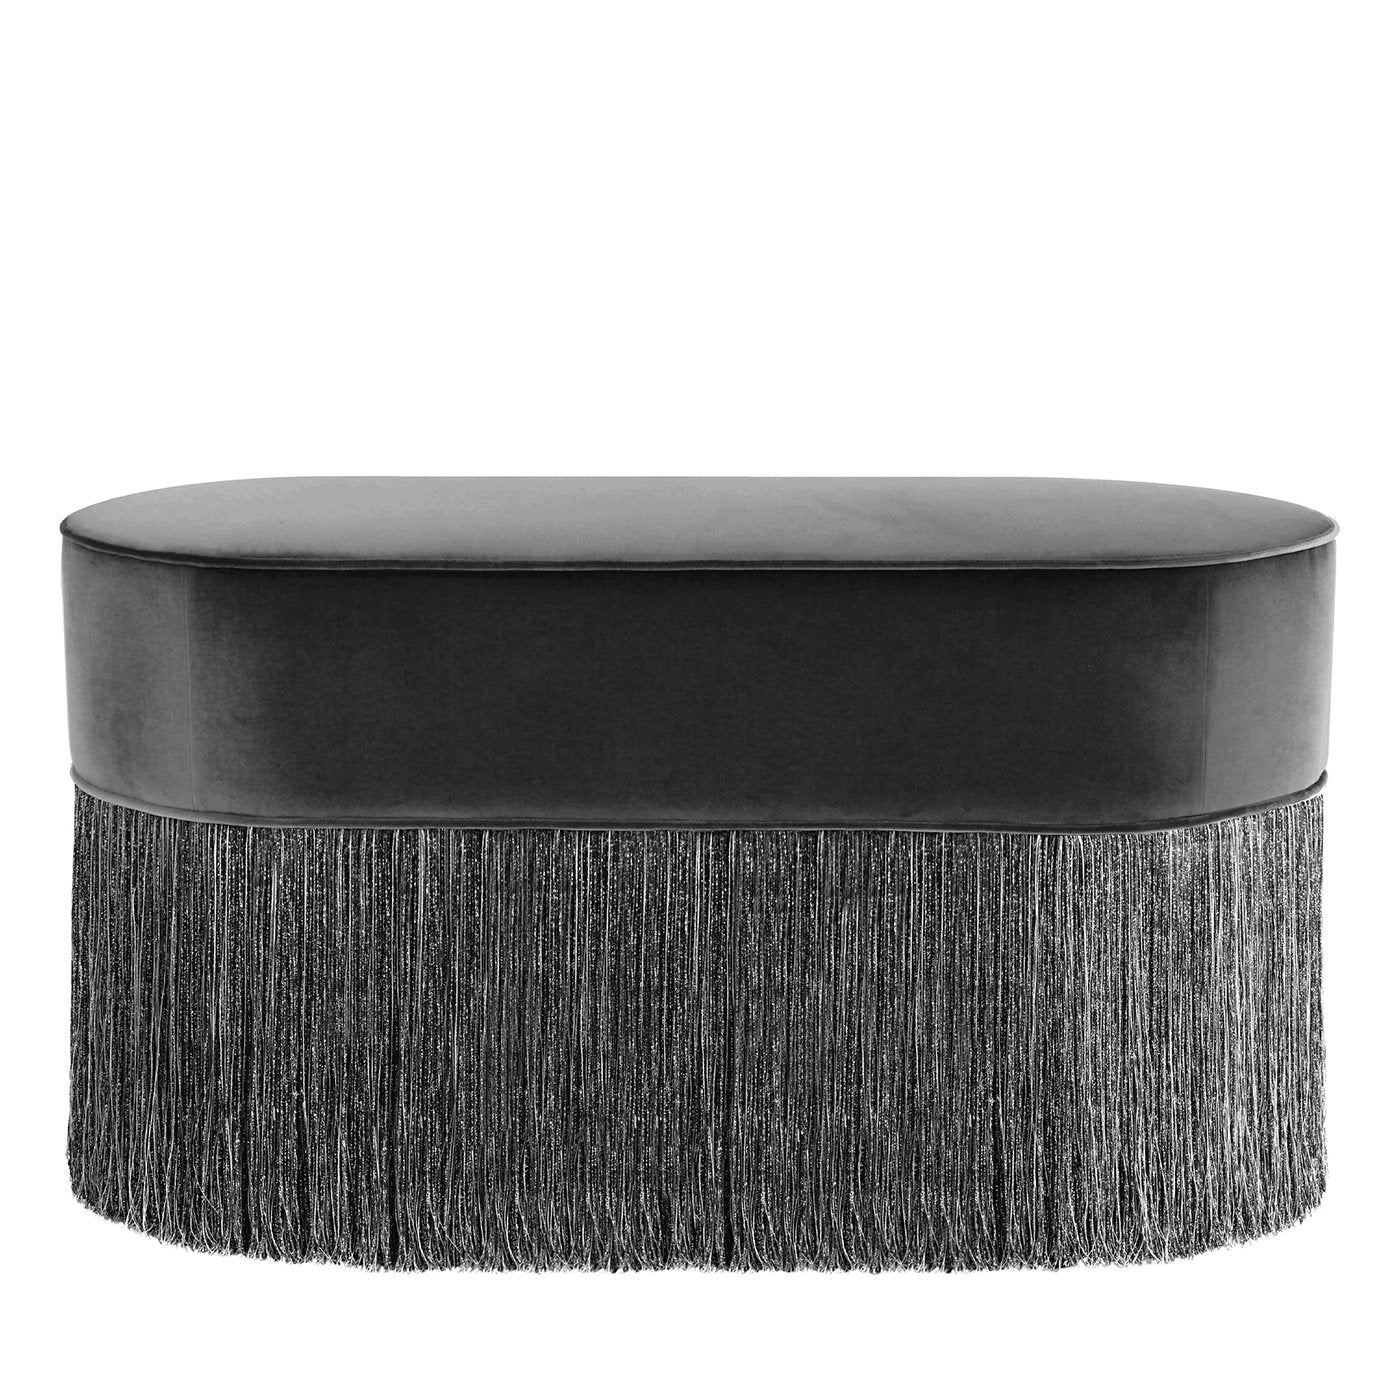 Ottomana ovale nera scintillante con frangia nera e argento - Vista principale